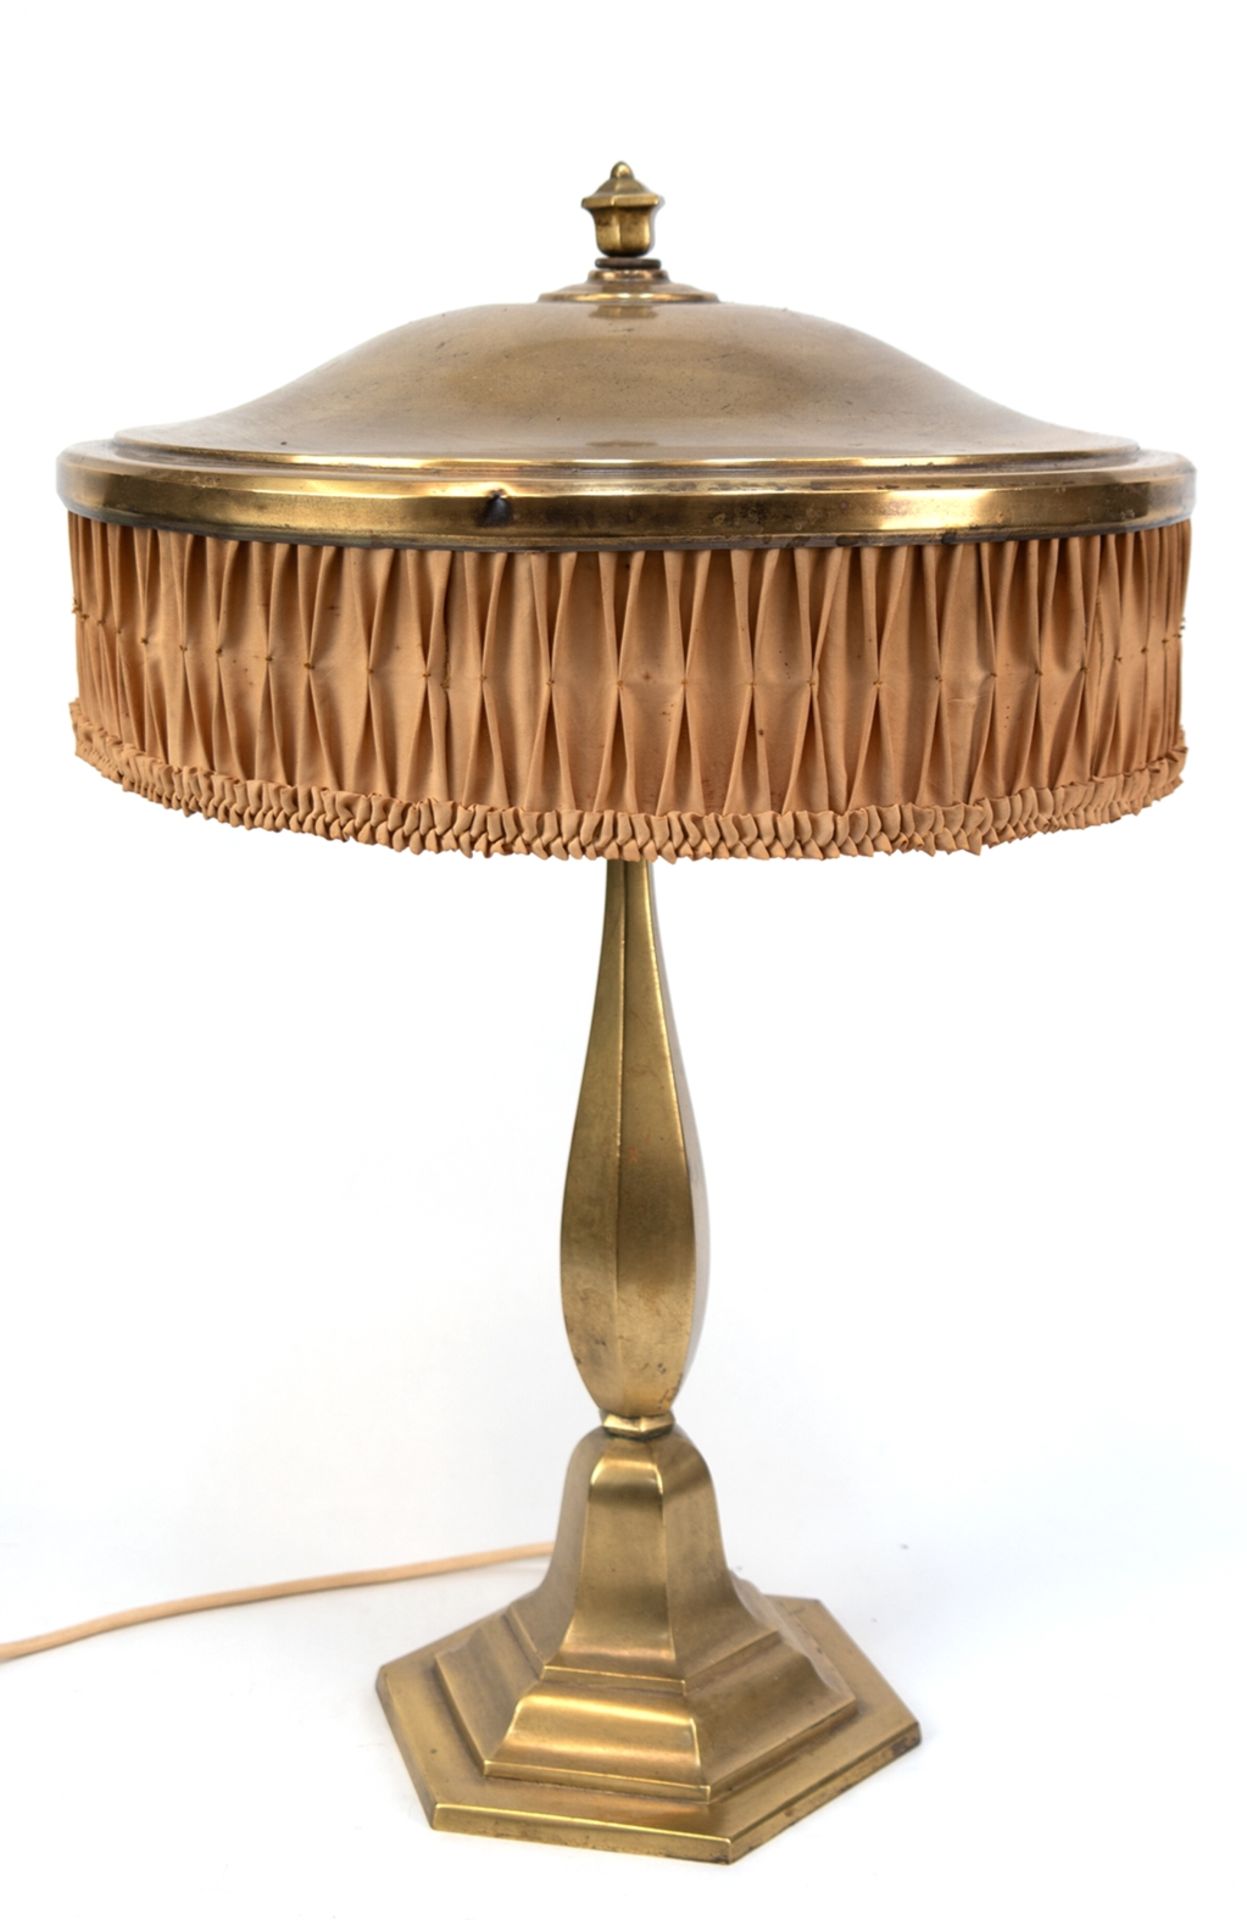 Art-Deco-Tischlampe, 2-flammig, 6-eckiger, getreppter Messing-Fuß, runder Schirm aus Messing und St